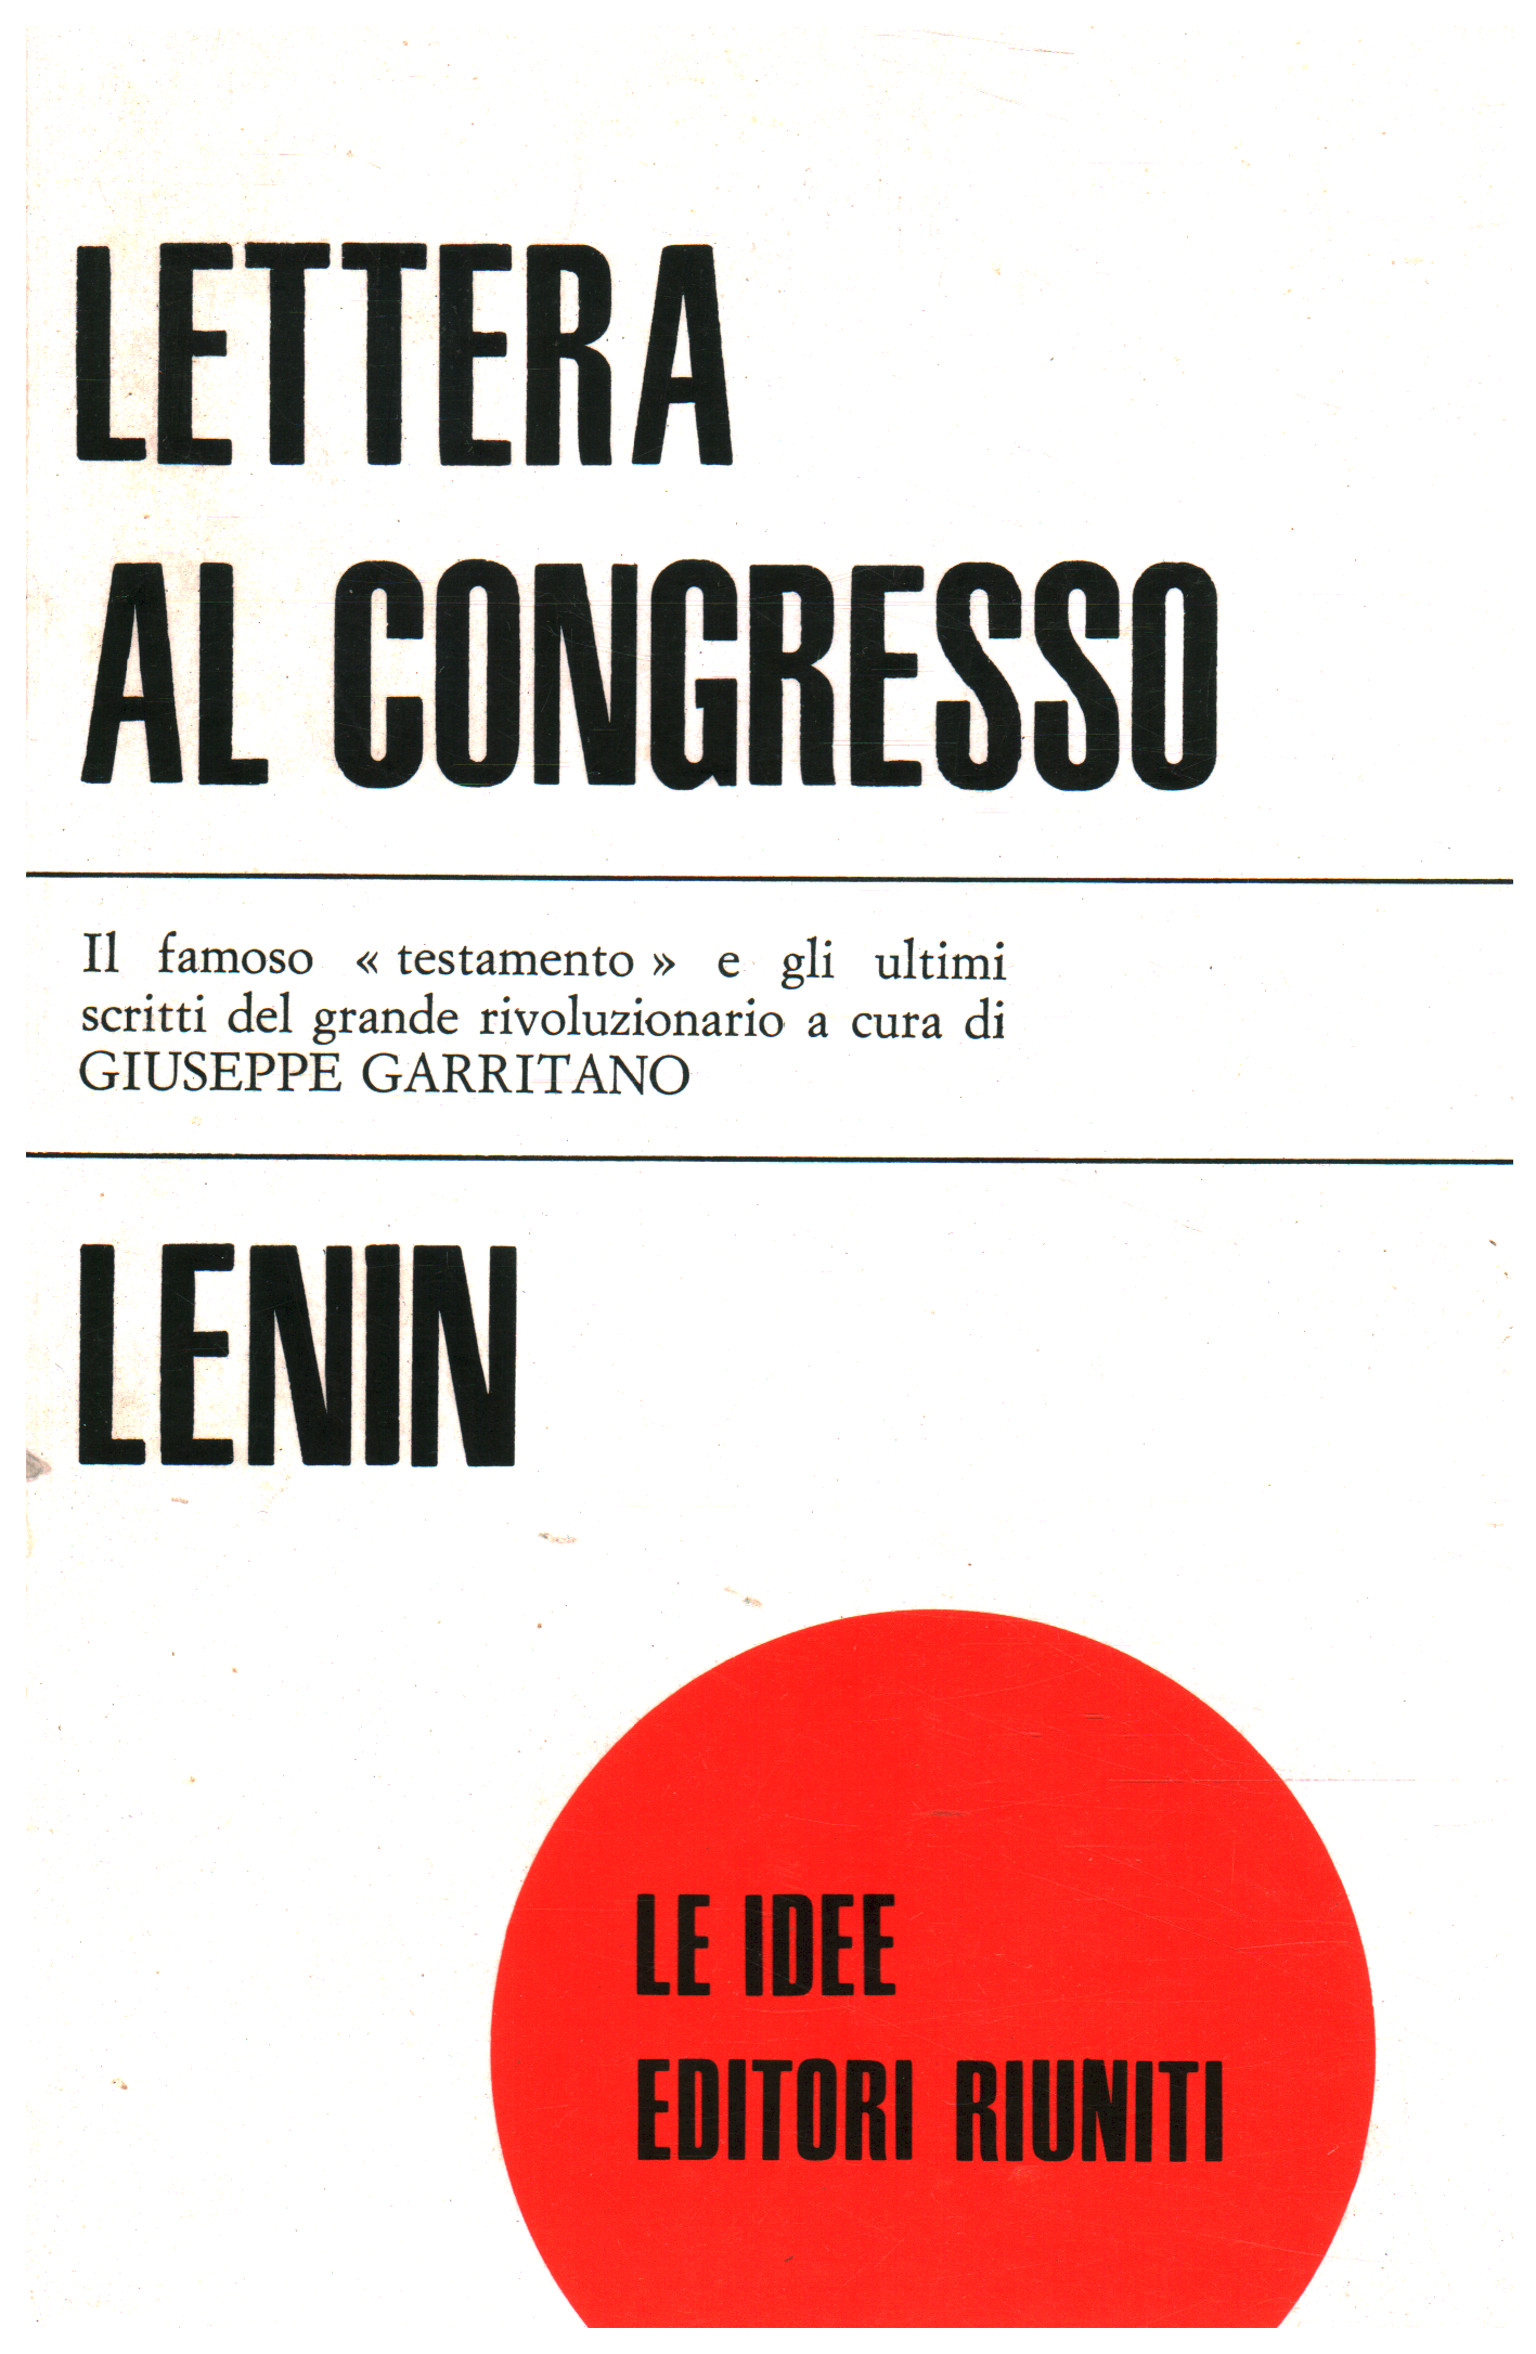 Lettera al congresso e ultimi scritti, V.I. Lenin